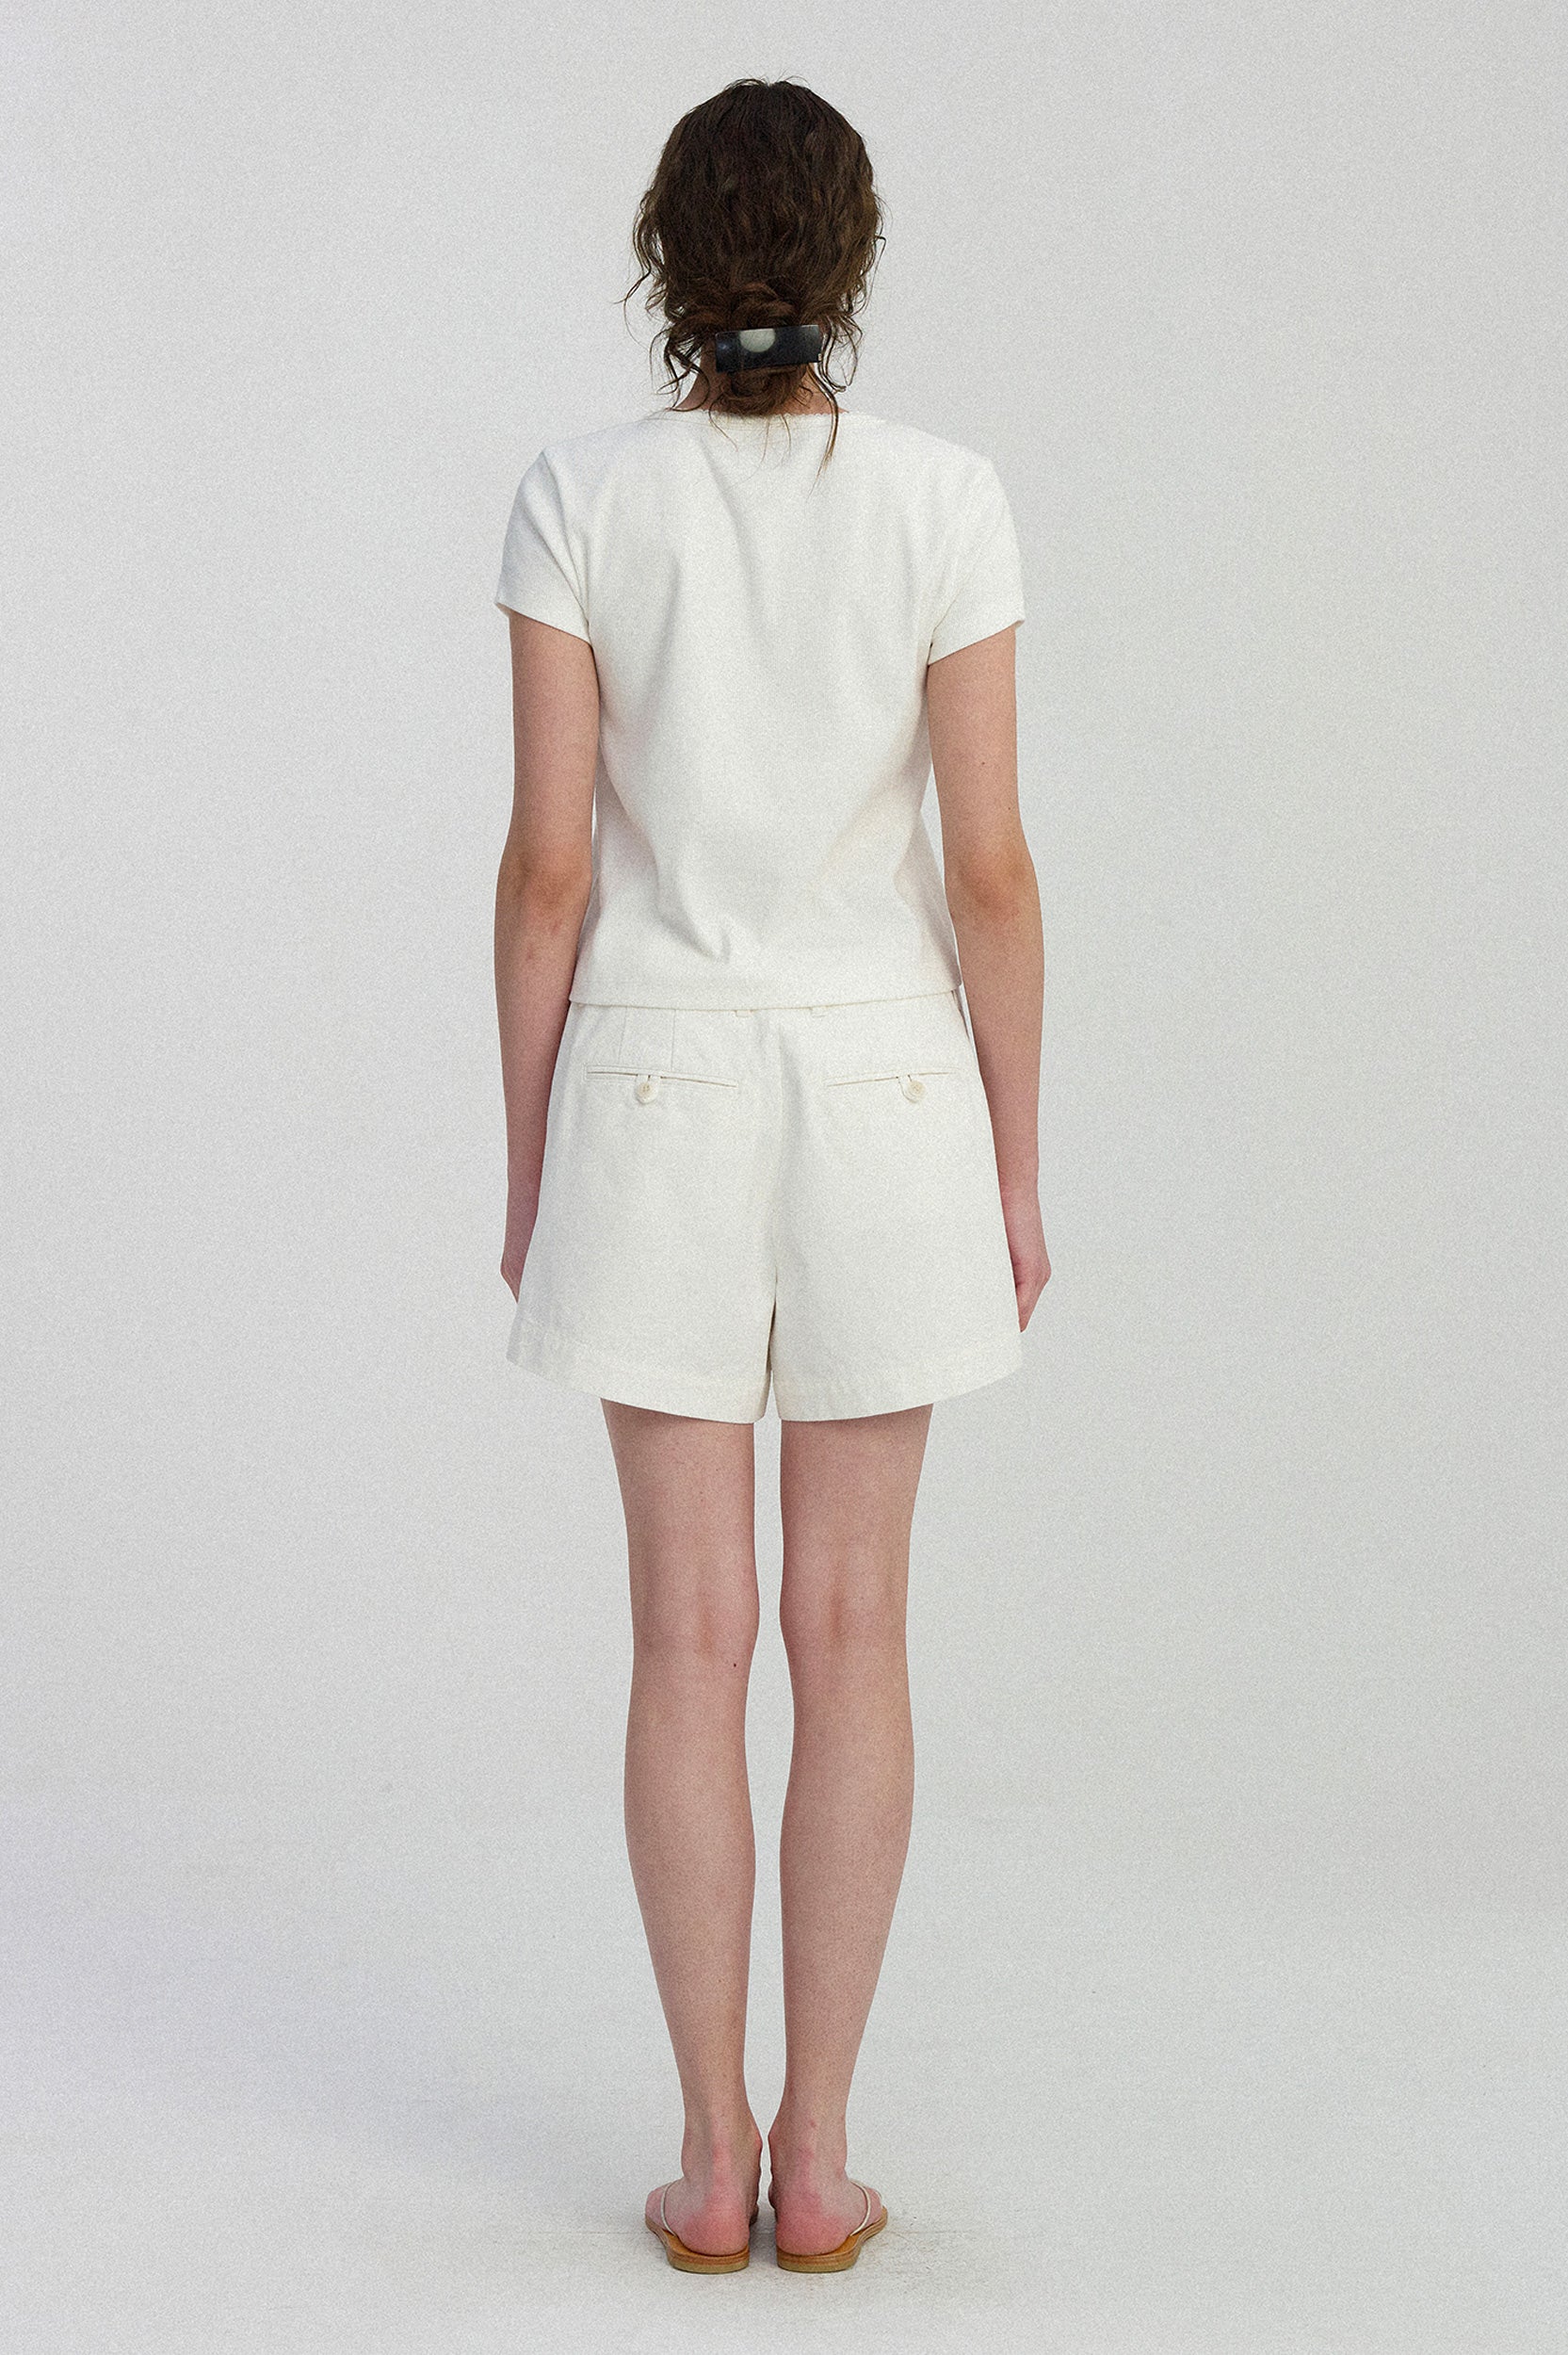 Chino Mini Cotton Short in White